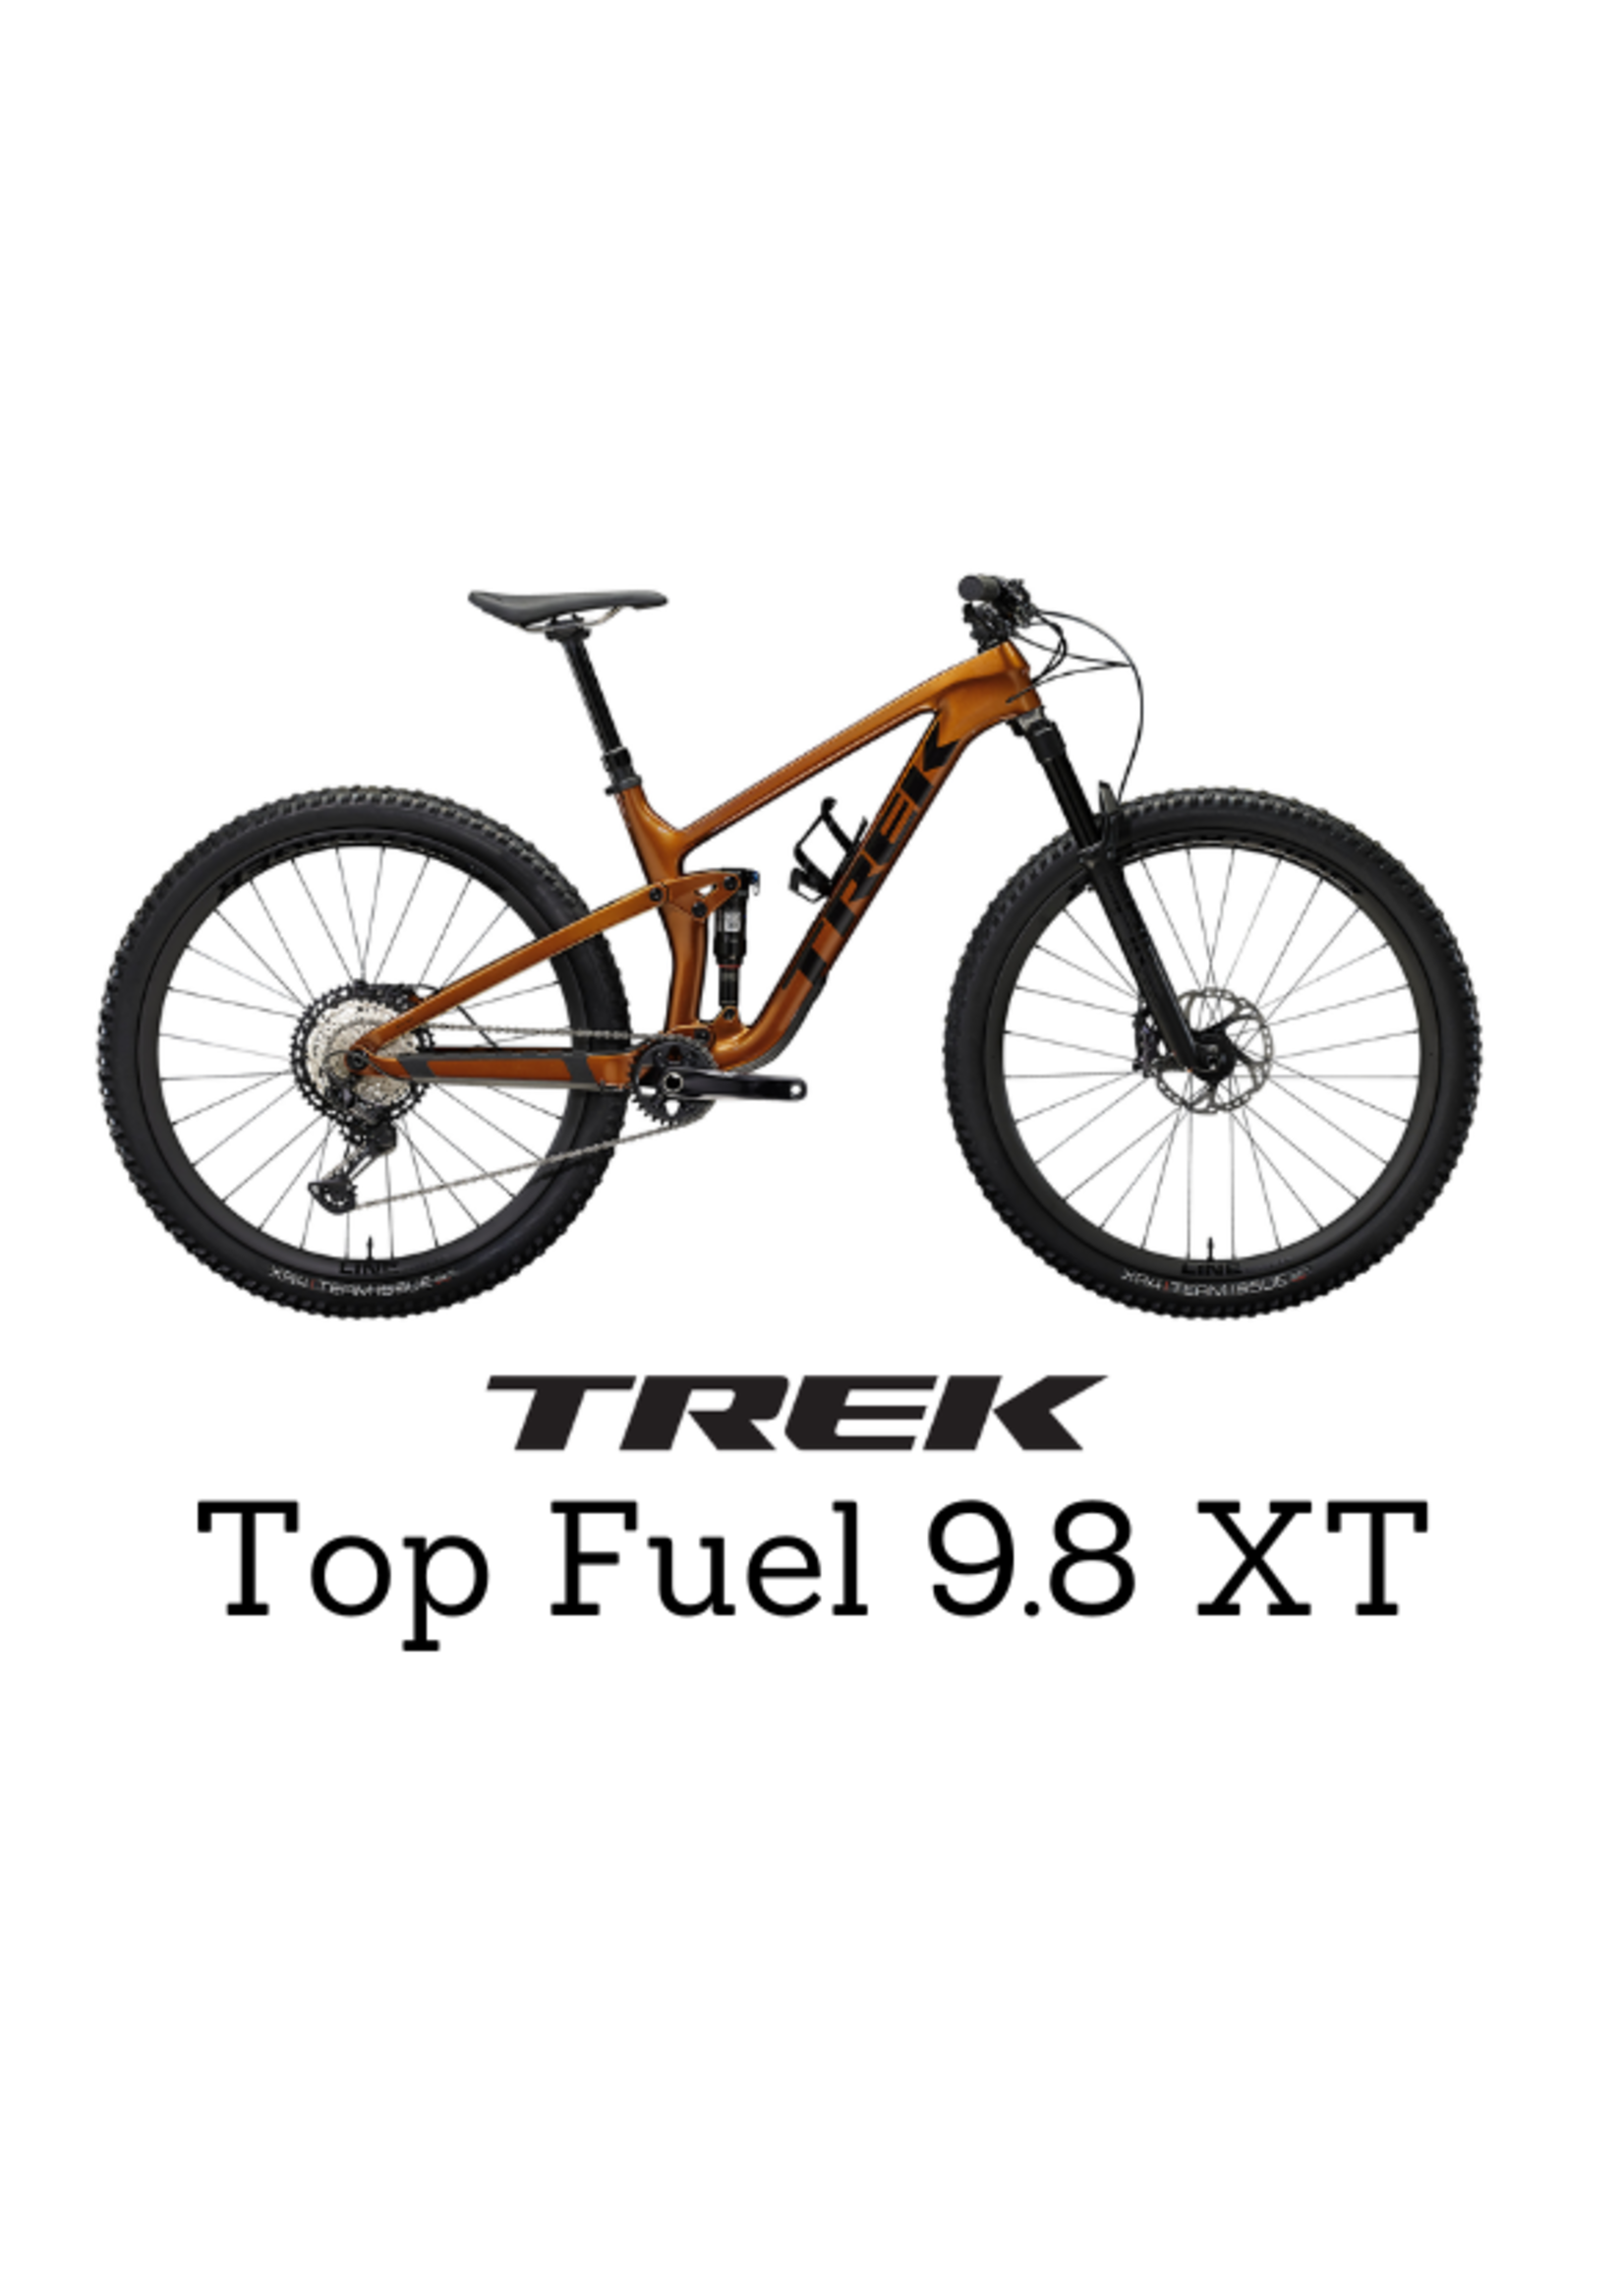 TREK Trek Top Fuel 9.8 XT